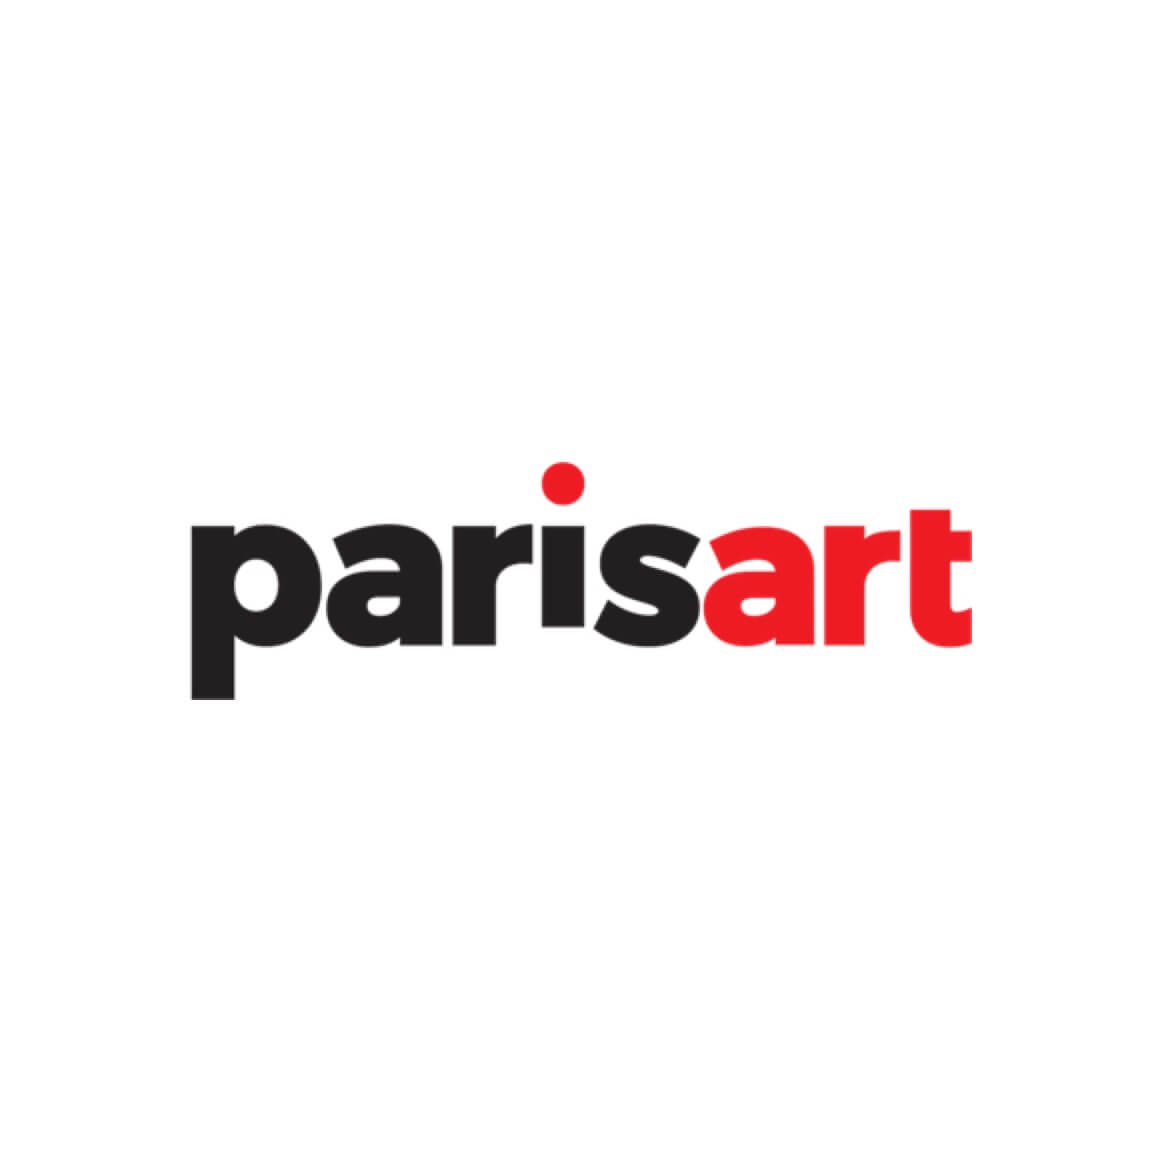 ParisArt